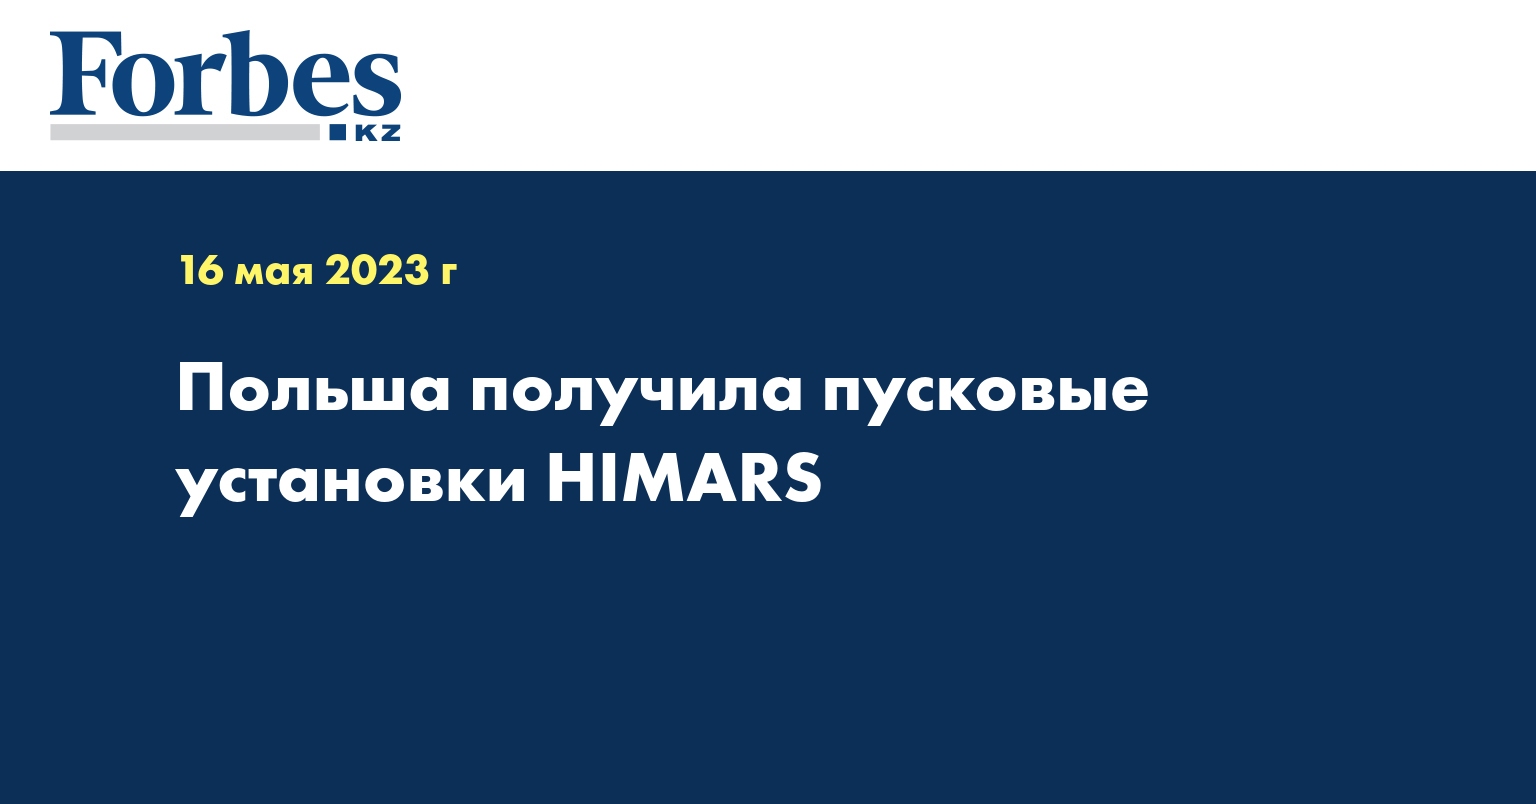 Польша получила пусковые установки HIMARS